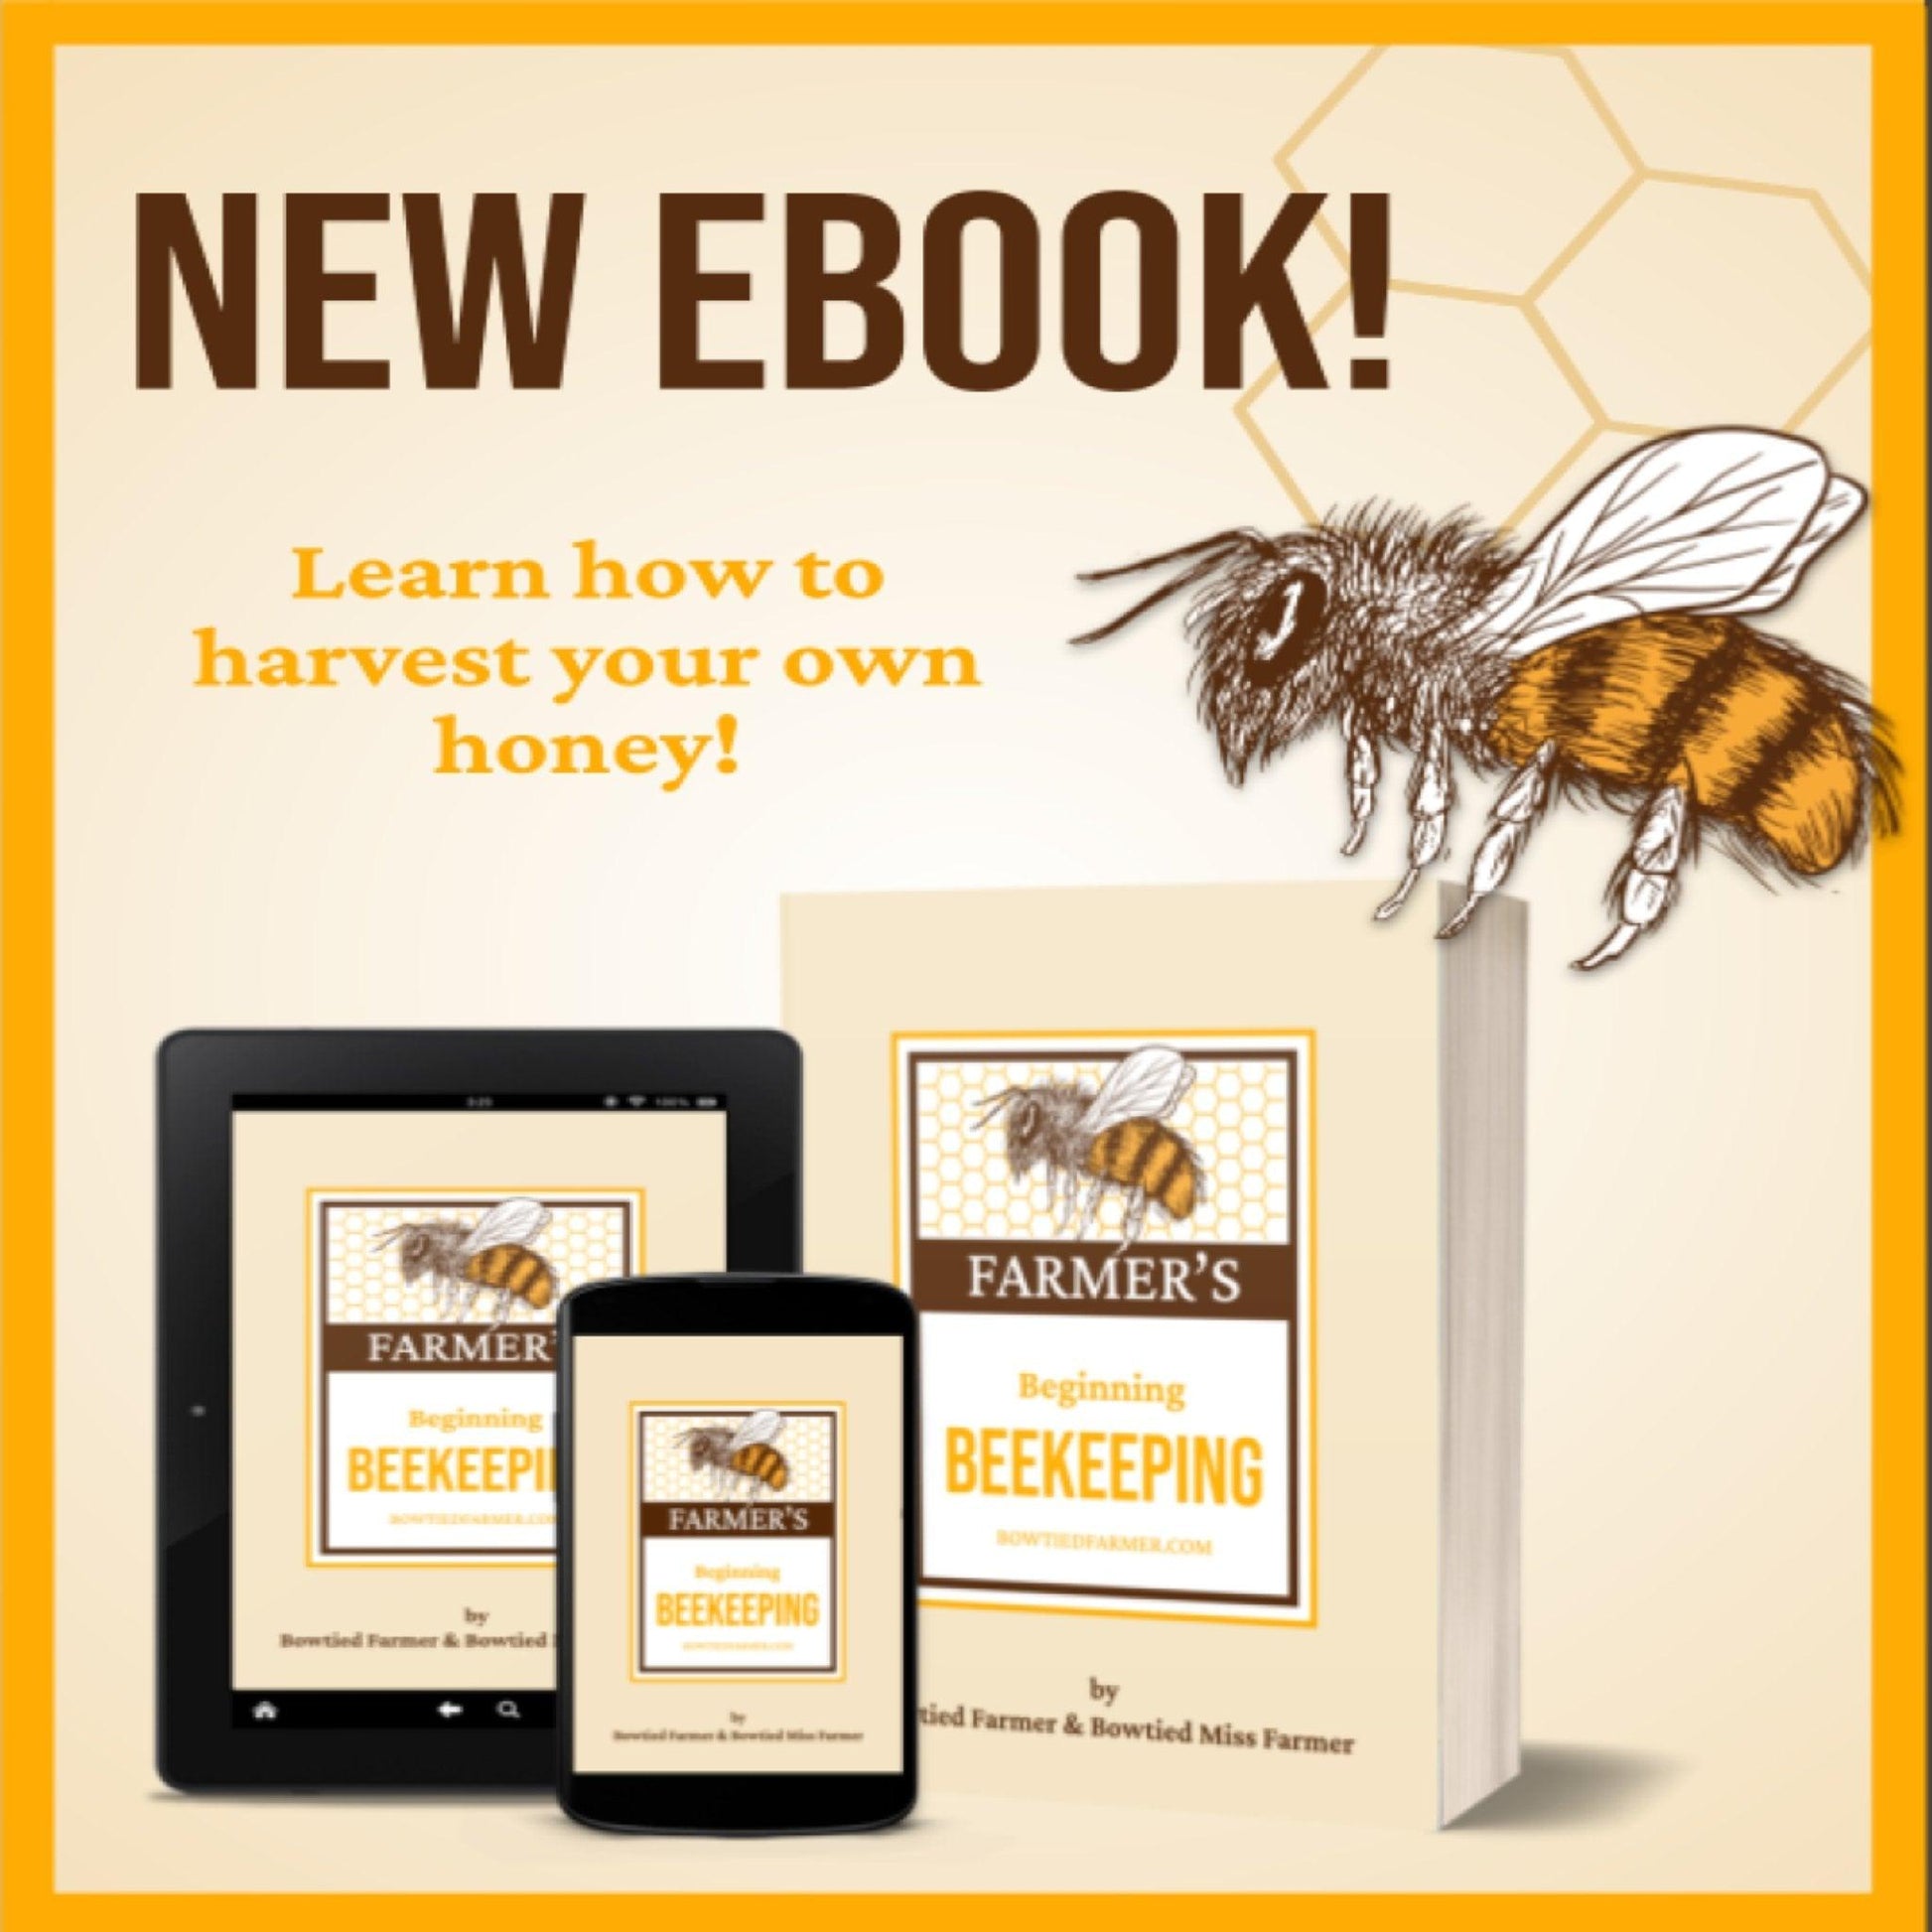 Beginning Beekeeping eBook - Bowtied Farmer